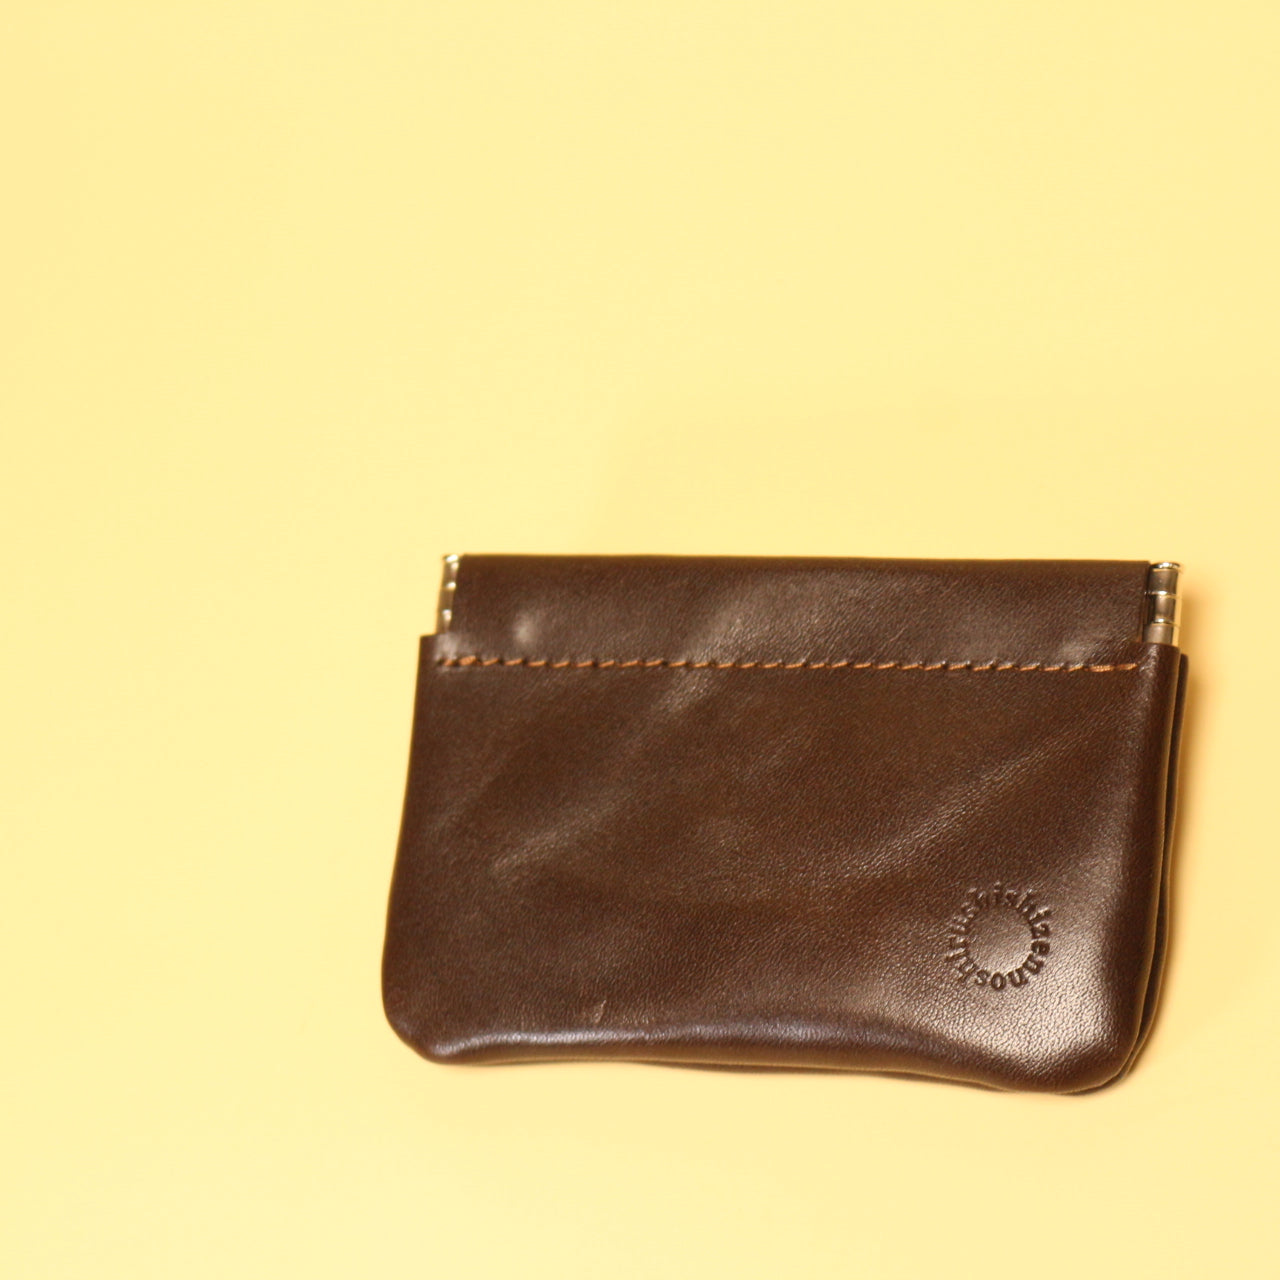 this “coin purse” : r/ATBGE